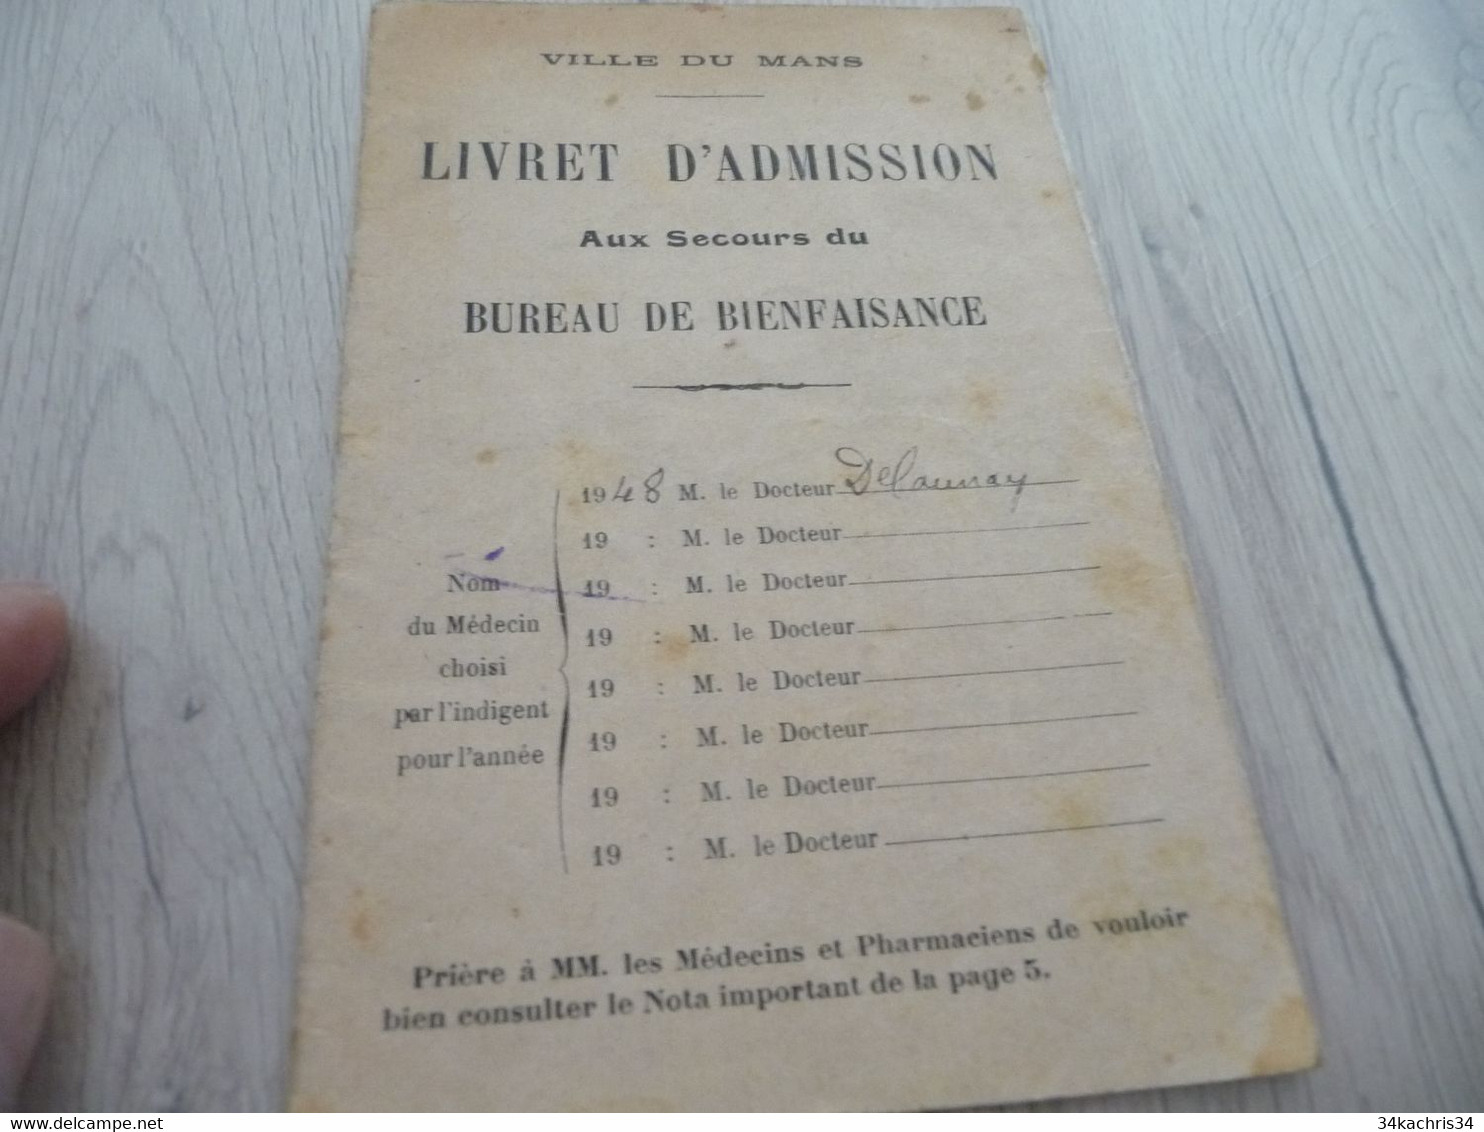 Livret D'admission Aux Secours Du Bureau De Bienfaisance De La Ville Du Mans Guerre 39/45 - Documents